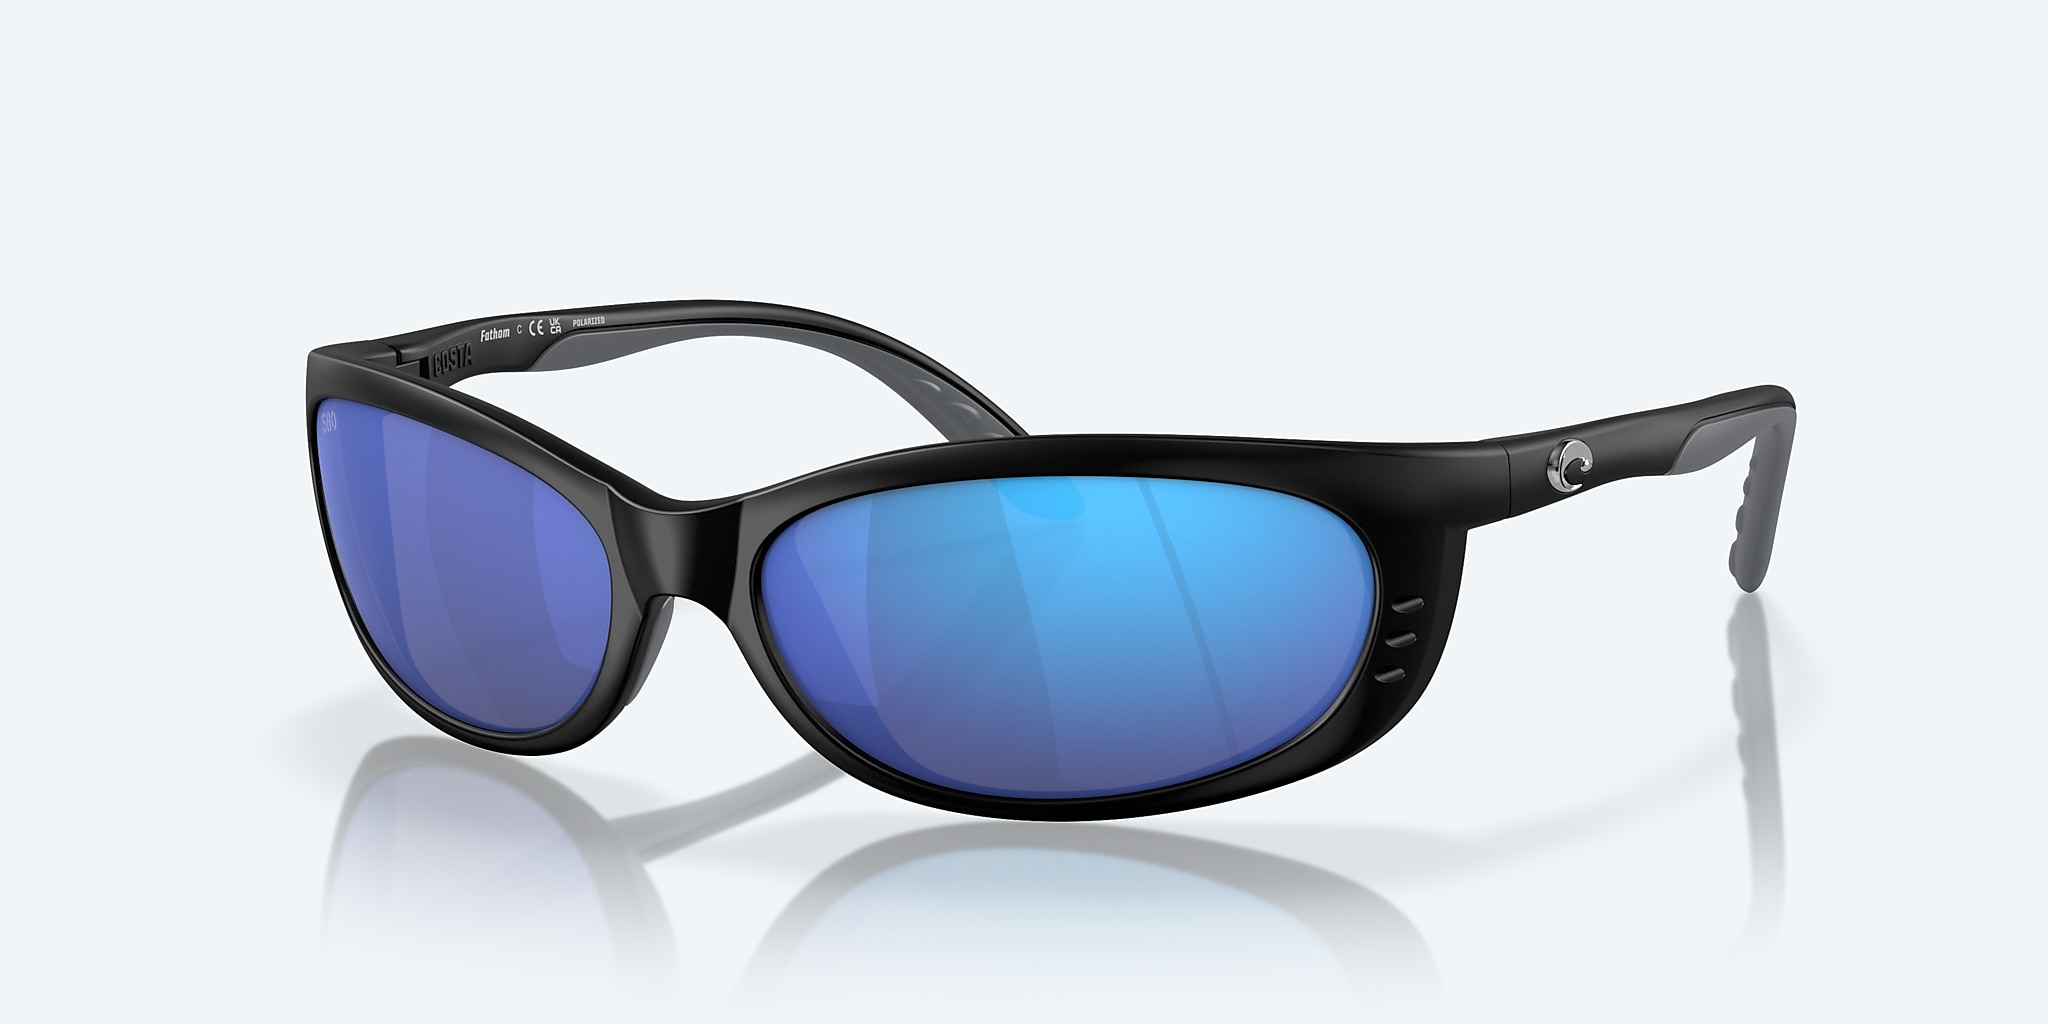 Fathom Polarized Sunglasses in Blue Mirror